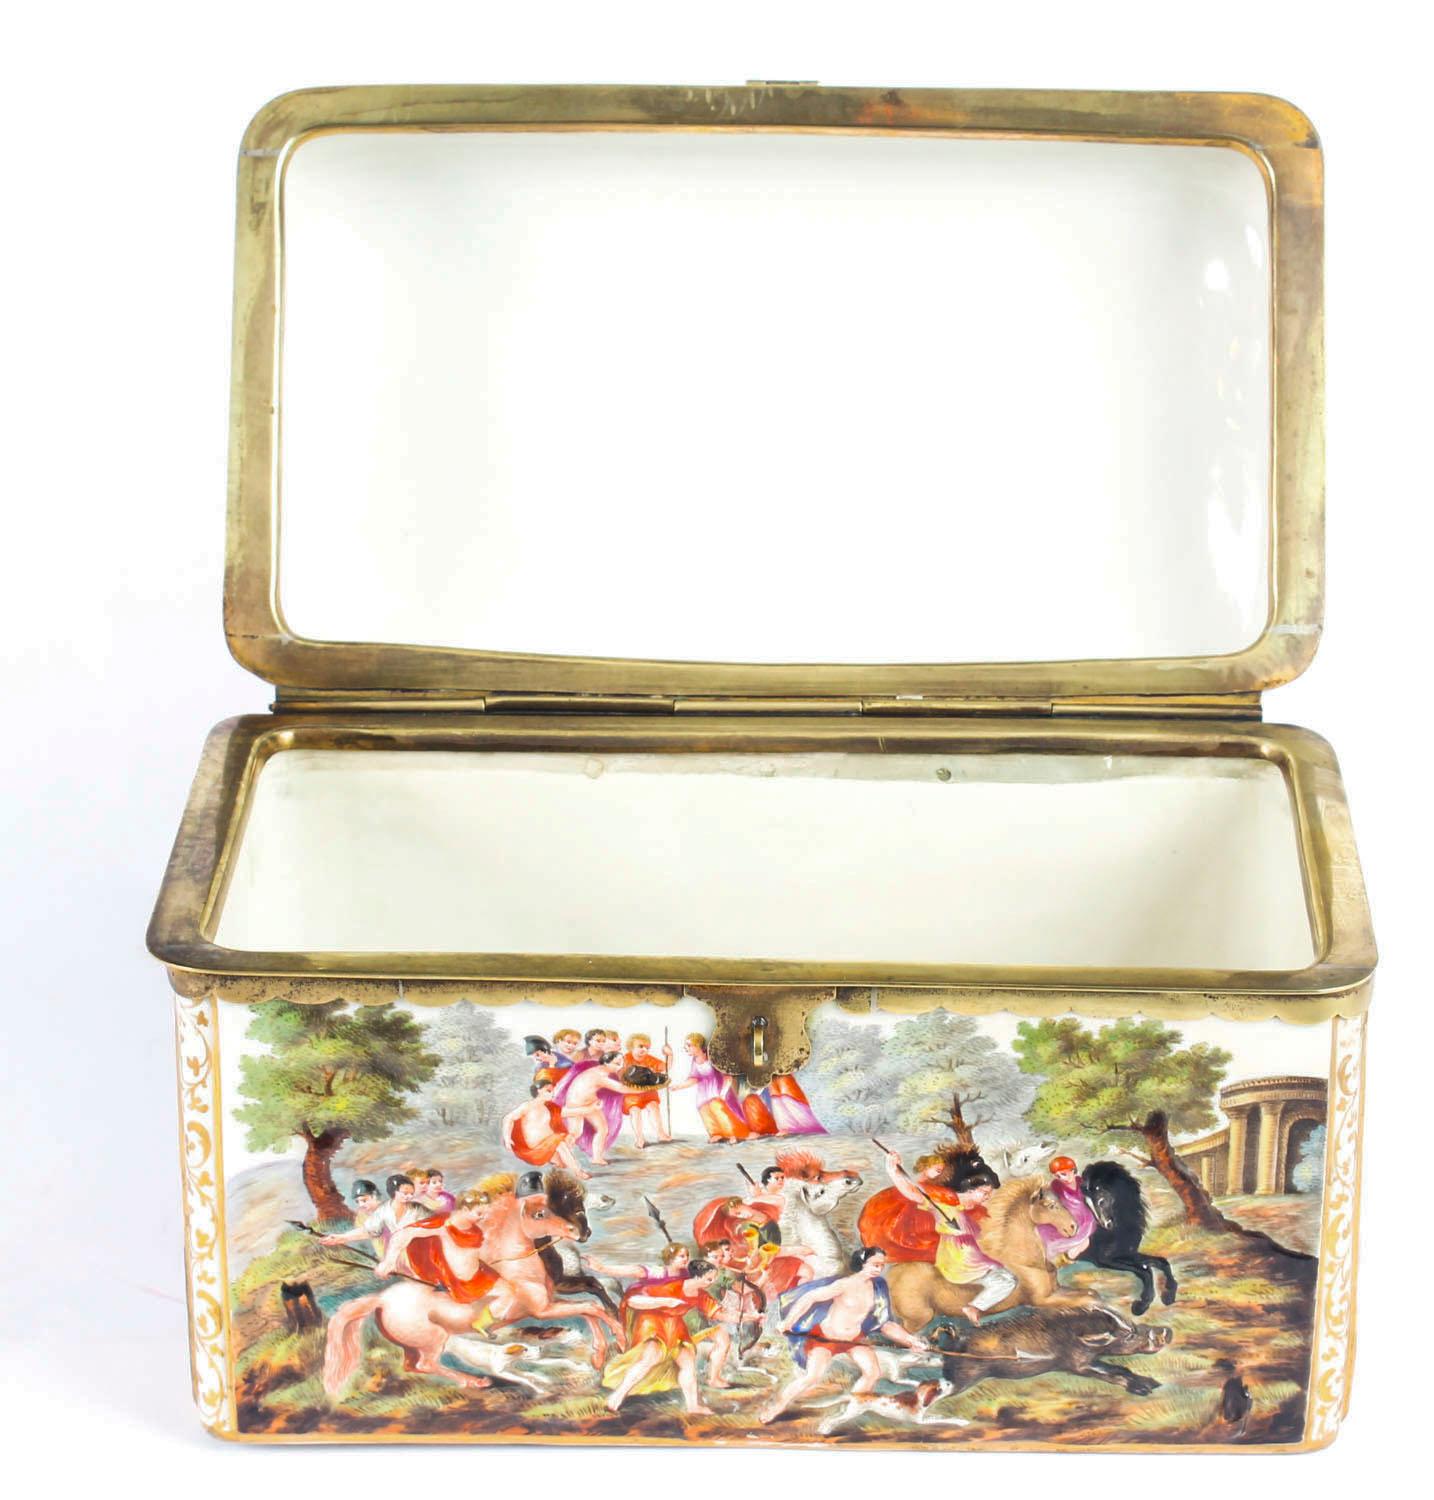 Antique Italian Capodimonte Porcelain Table Casket, 19th Century For Sale 8